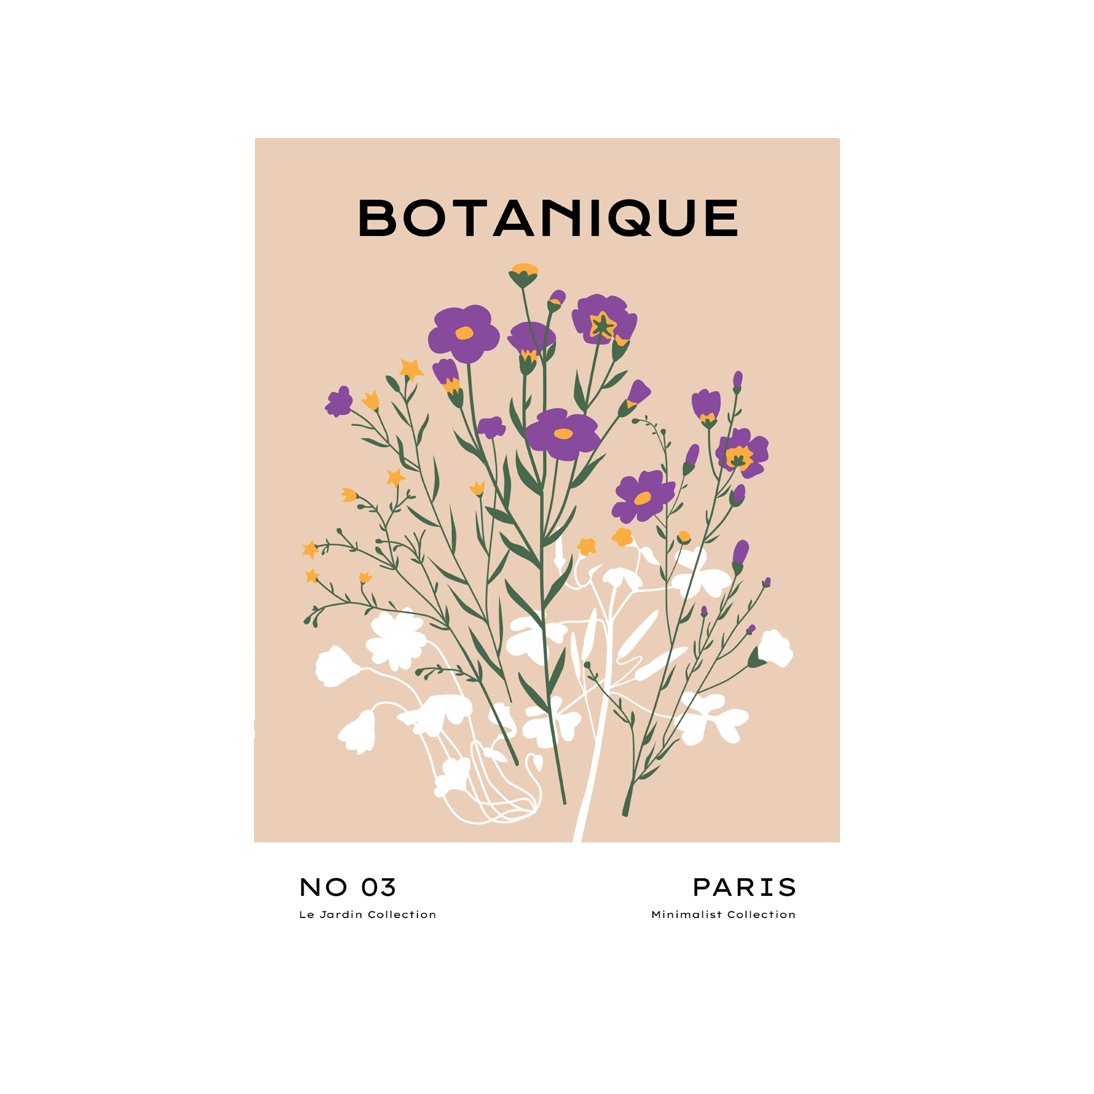 Botanical #2